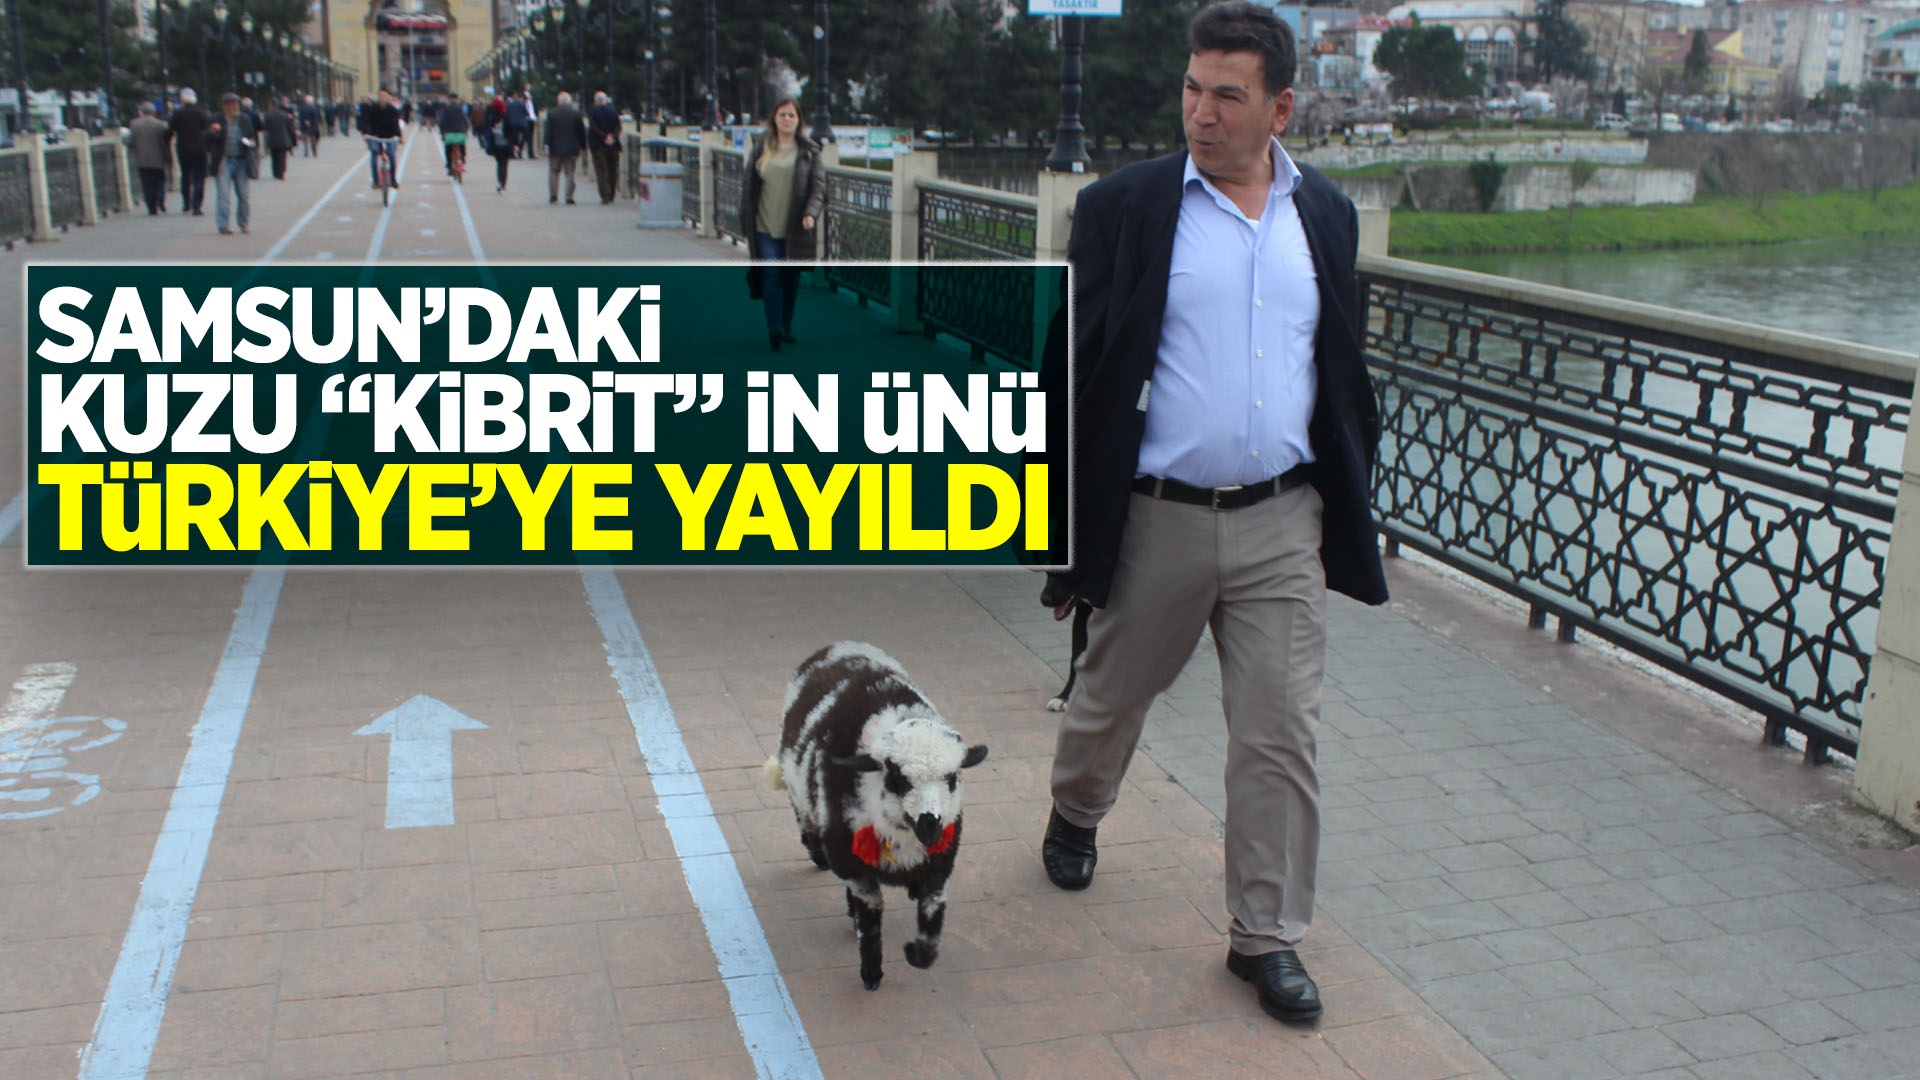 Samsun'daki kuzu "Kibrit"in ünü Türkiye'ye yayıldı